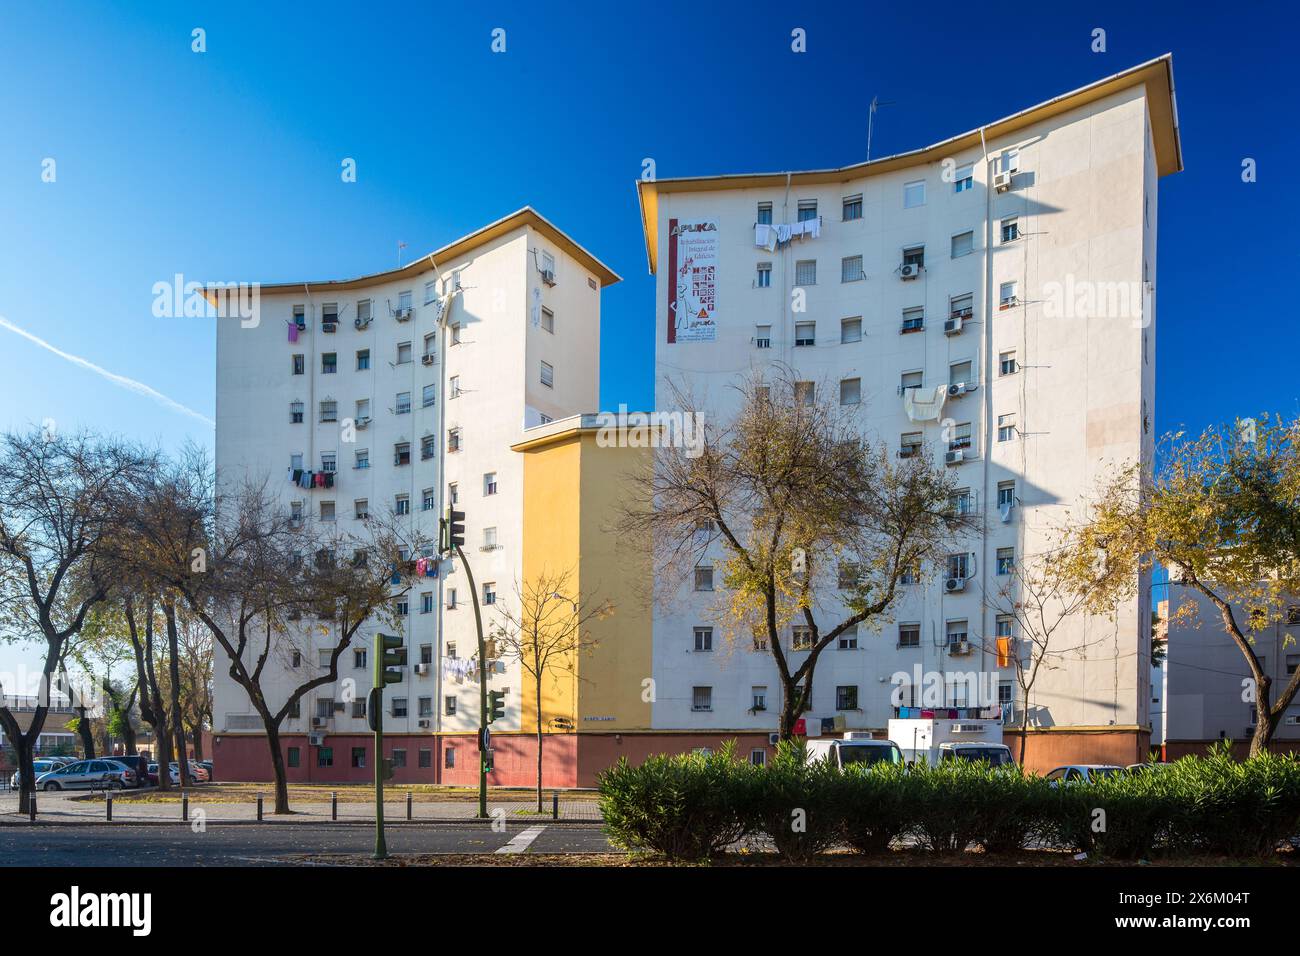 Ein Blick in die Vergangenheit Sevillas mit einem Wohnblock aus den 1950er Jahren im Stadtteil El Tardón von Triana. Stockfoto